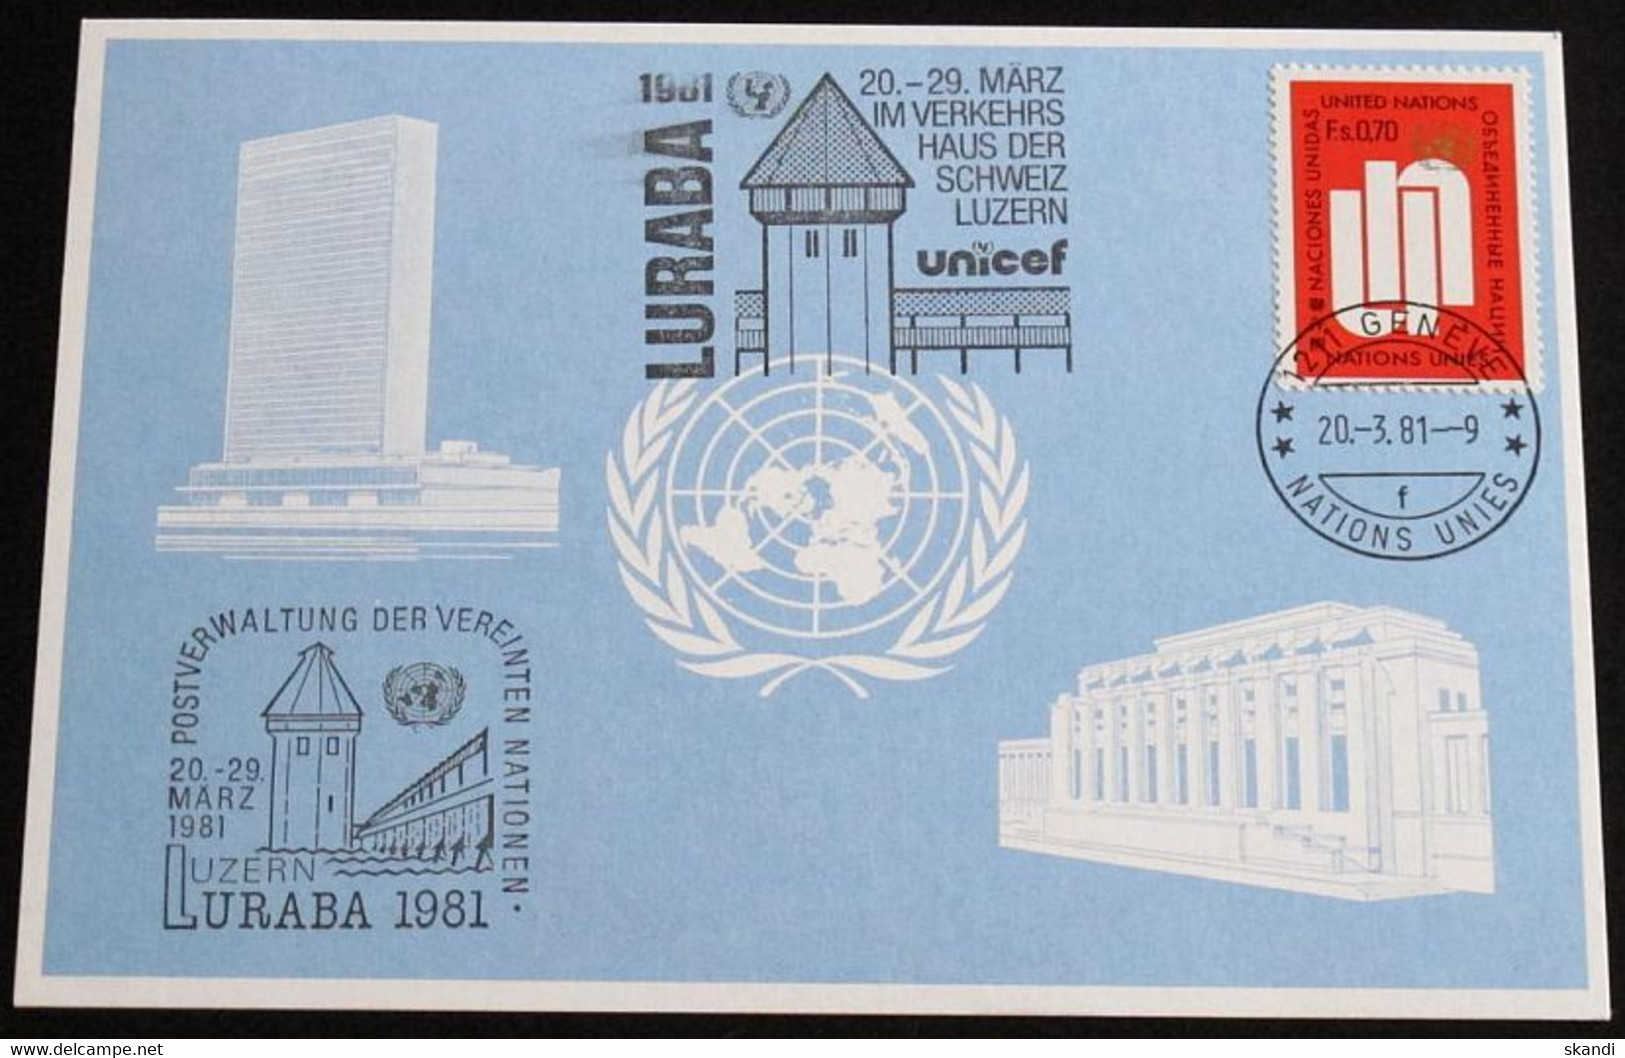 UNO GENF 1981 Mi-Nr. 99 Blaue Karte - Blue Card Mit Erinnerungsstempel UND SONDERSTEMPEL LURABA 1981 LUZERN - Briefe U. Dokumente